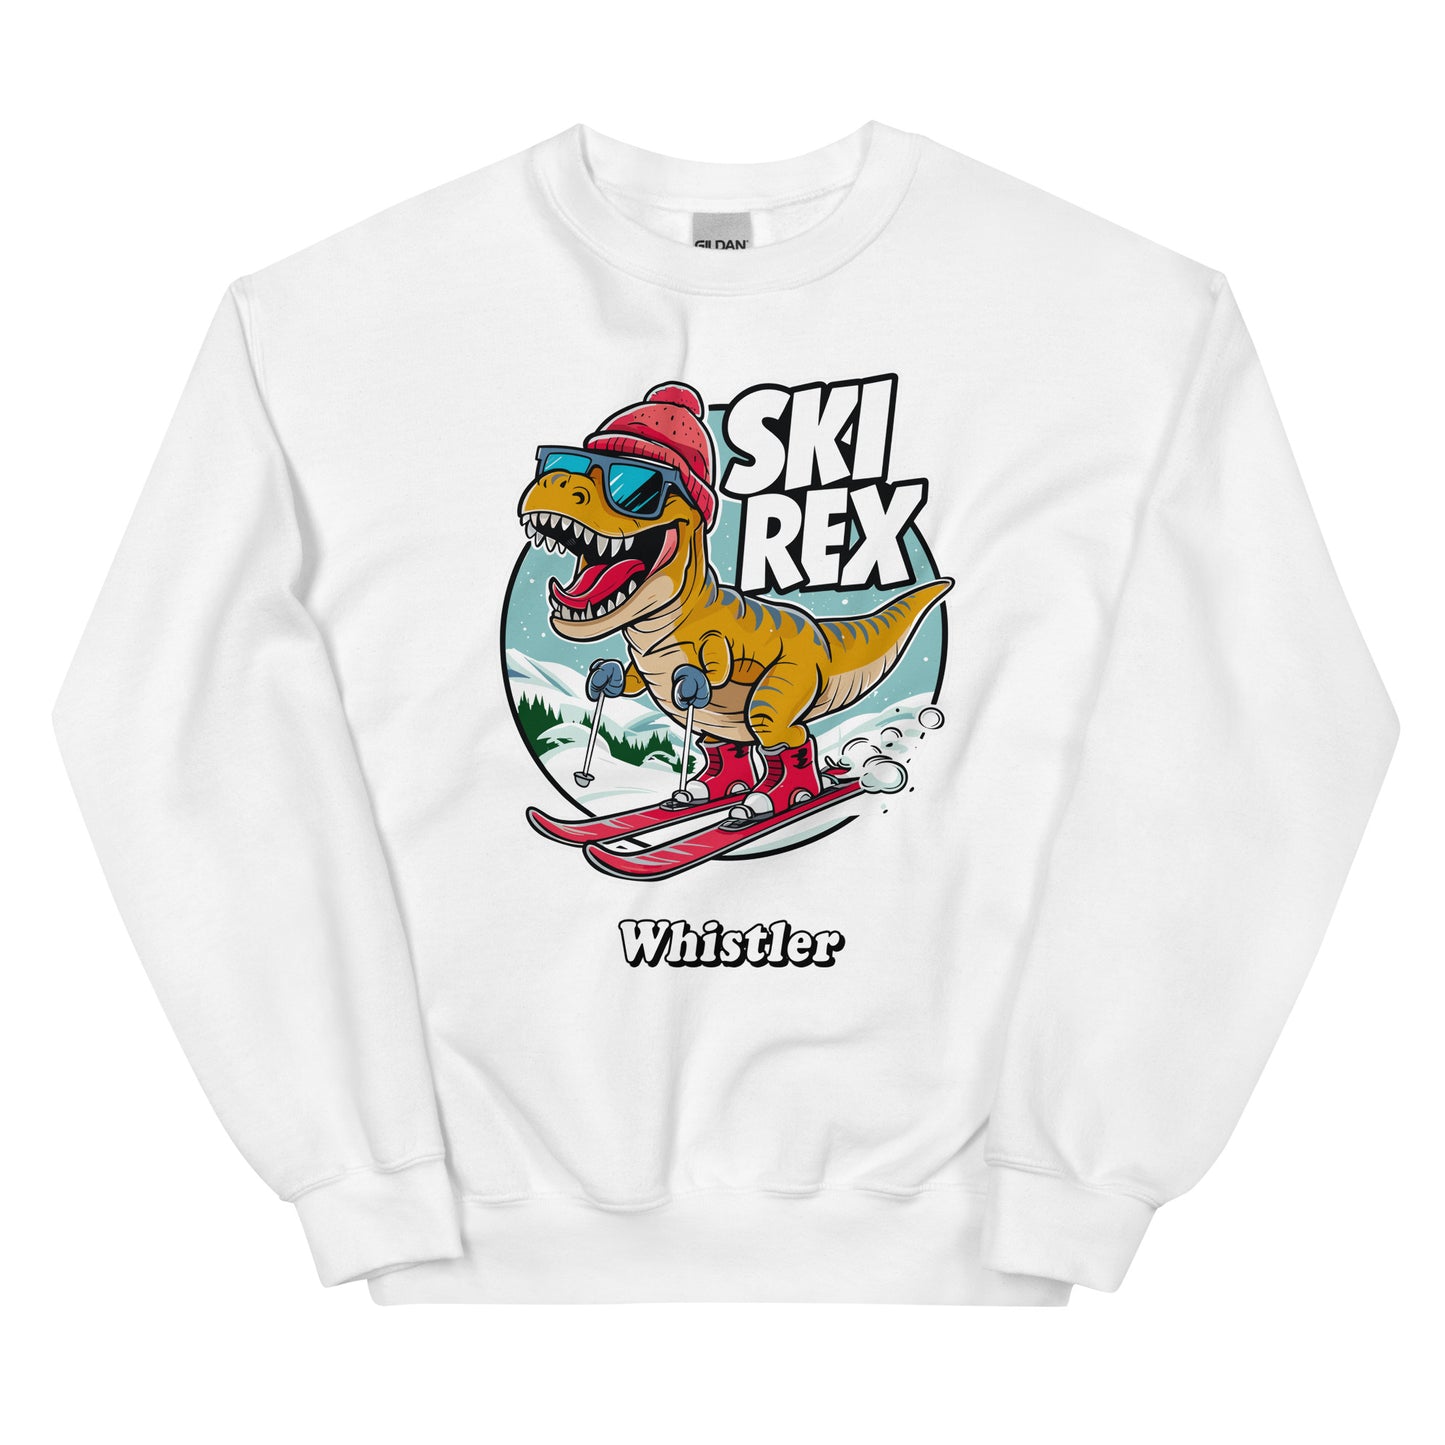 Ski Rex Whistler printed Crewneck Sweatshirt printed by Whistler Shirts